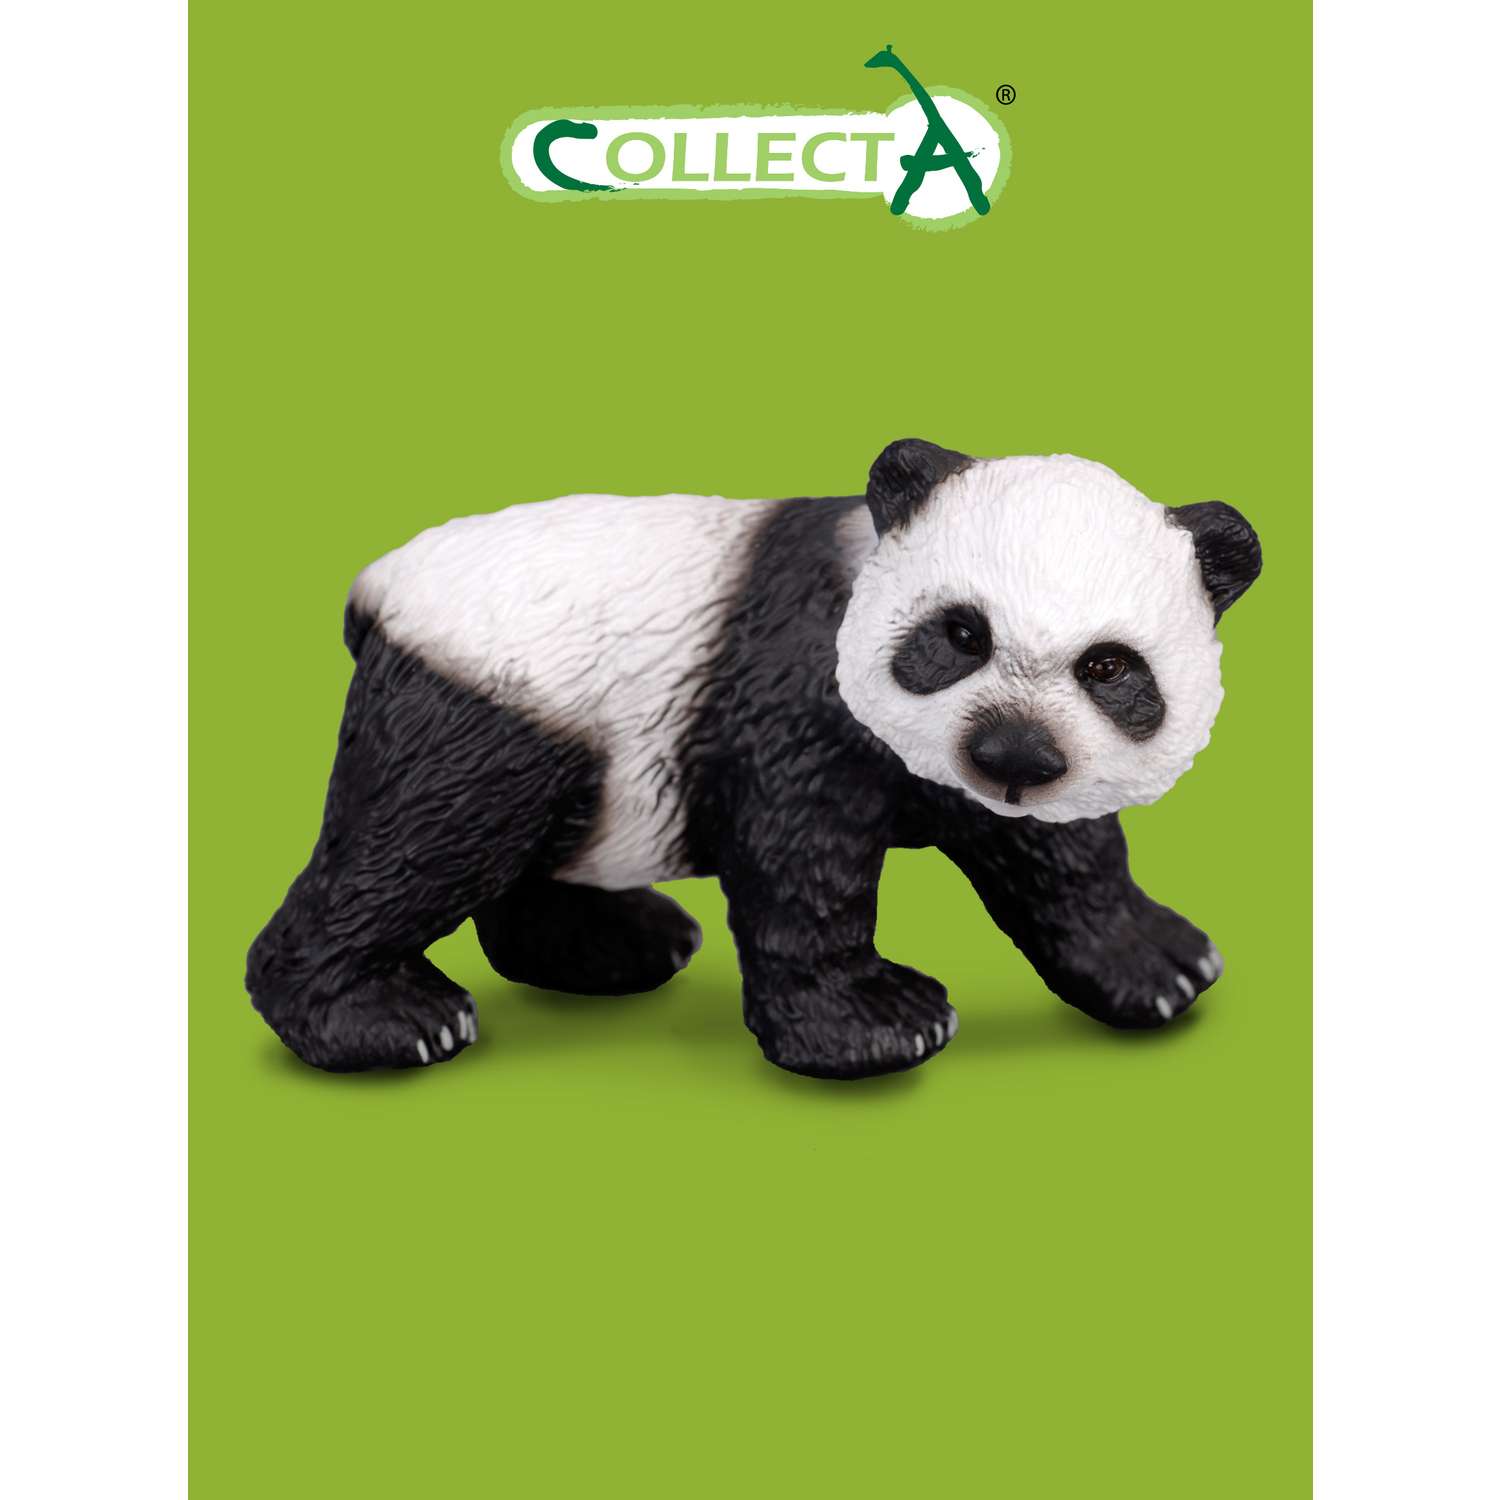 Фигурка животного Collecta Детеныш большой панды - фото 1